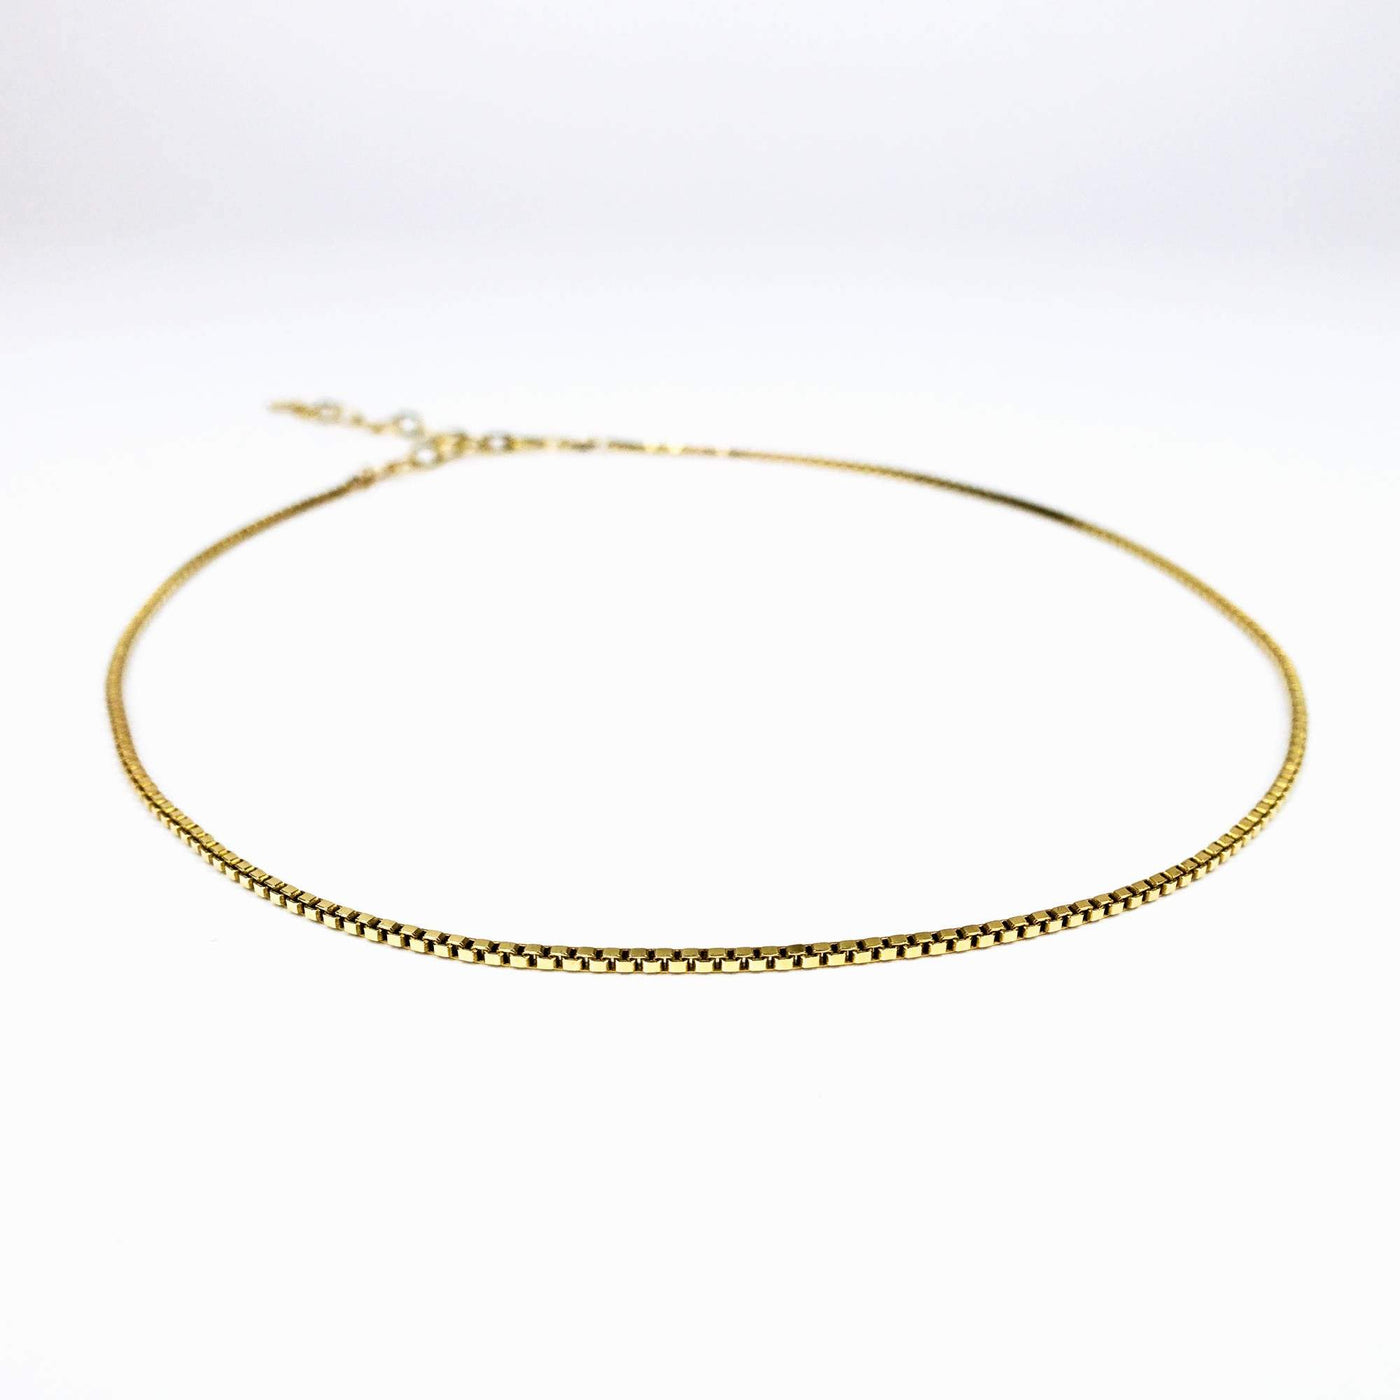 VENEZIA THIN – zarte Halskette in Silber, Gold oder Roségold